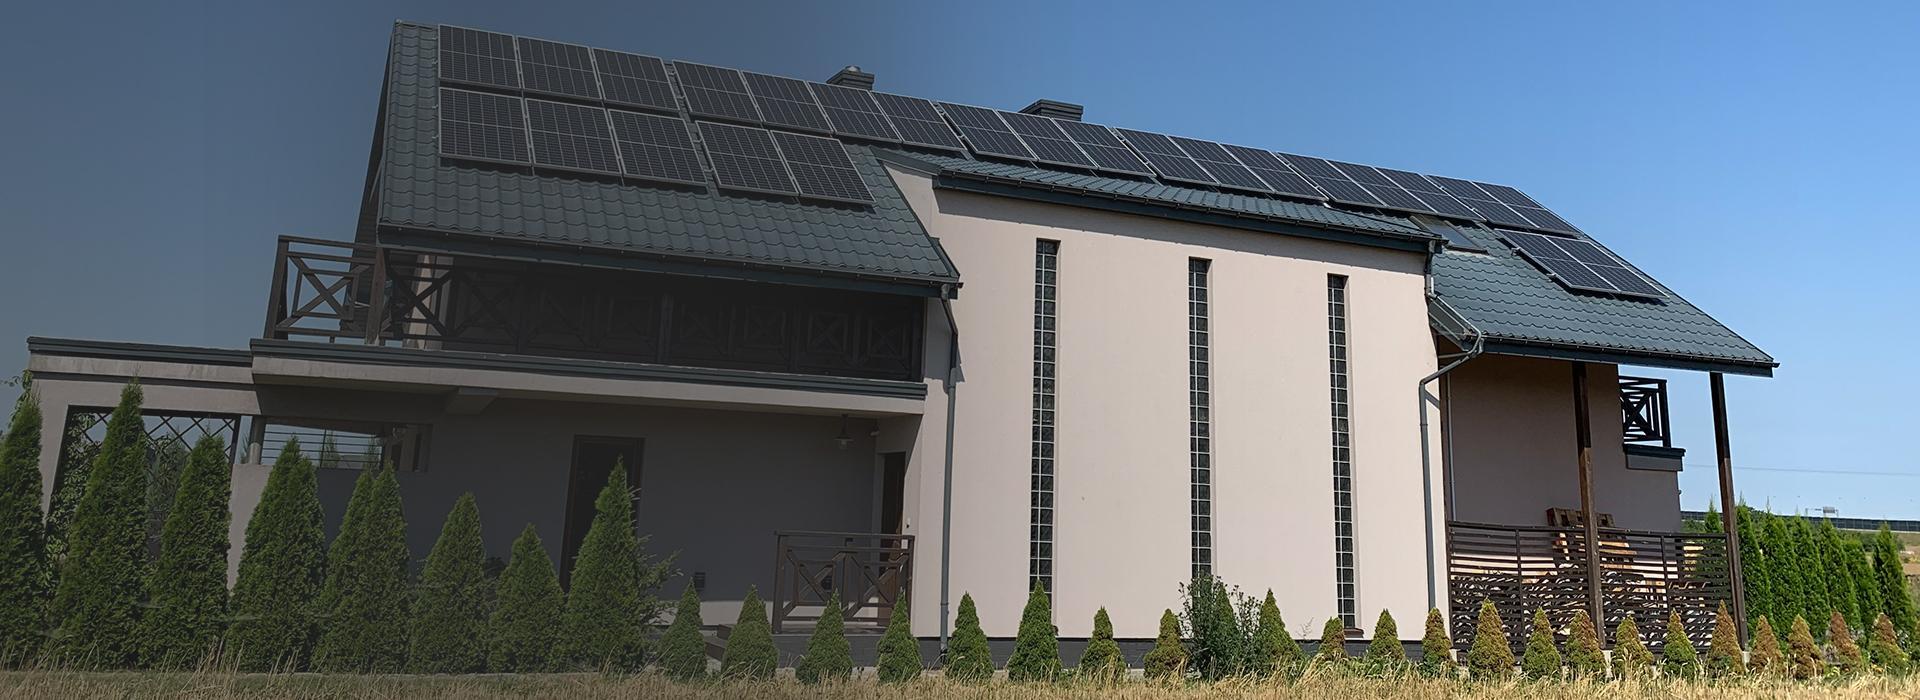 Slajd 1 dom z panelami słonecznymi na dachu